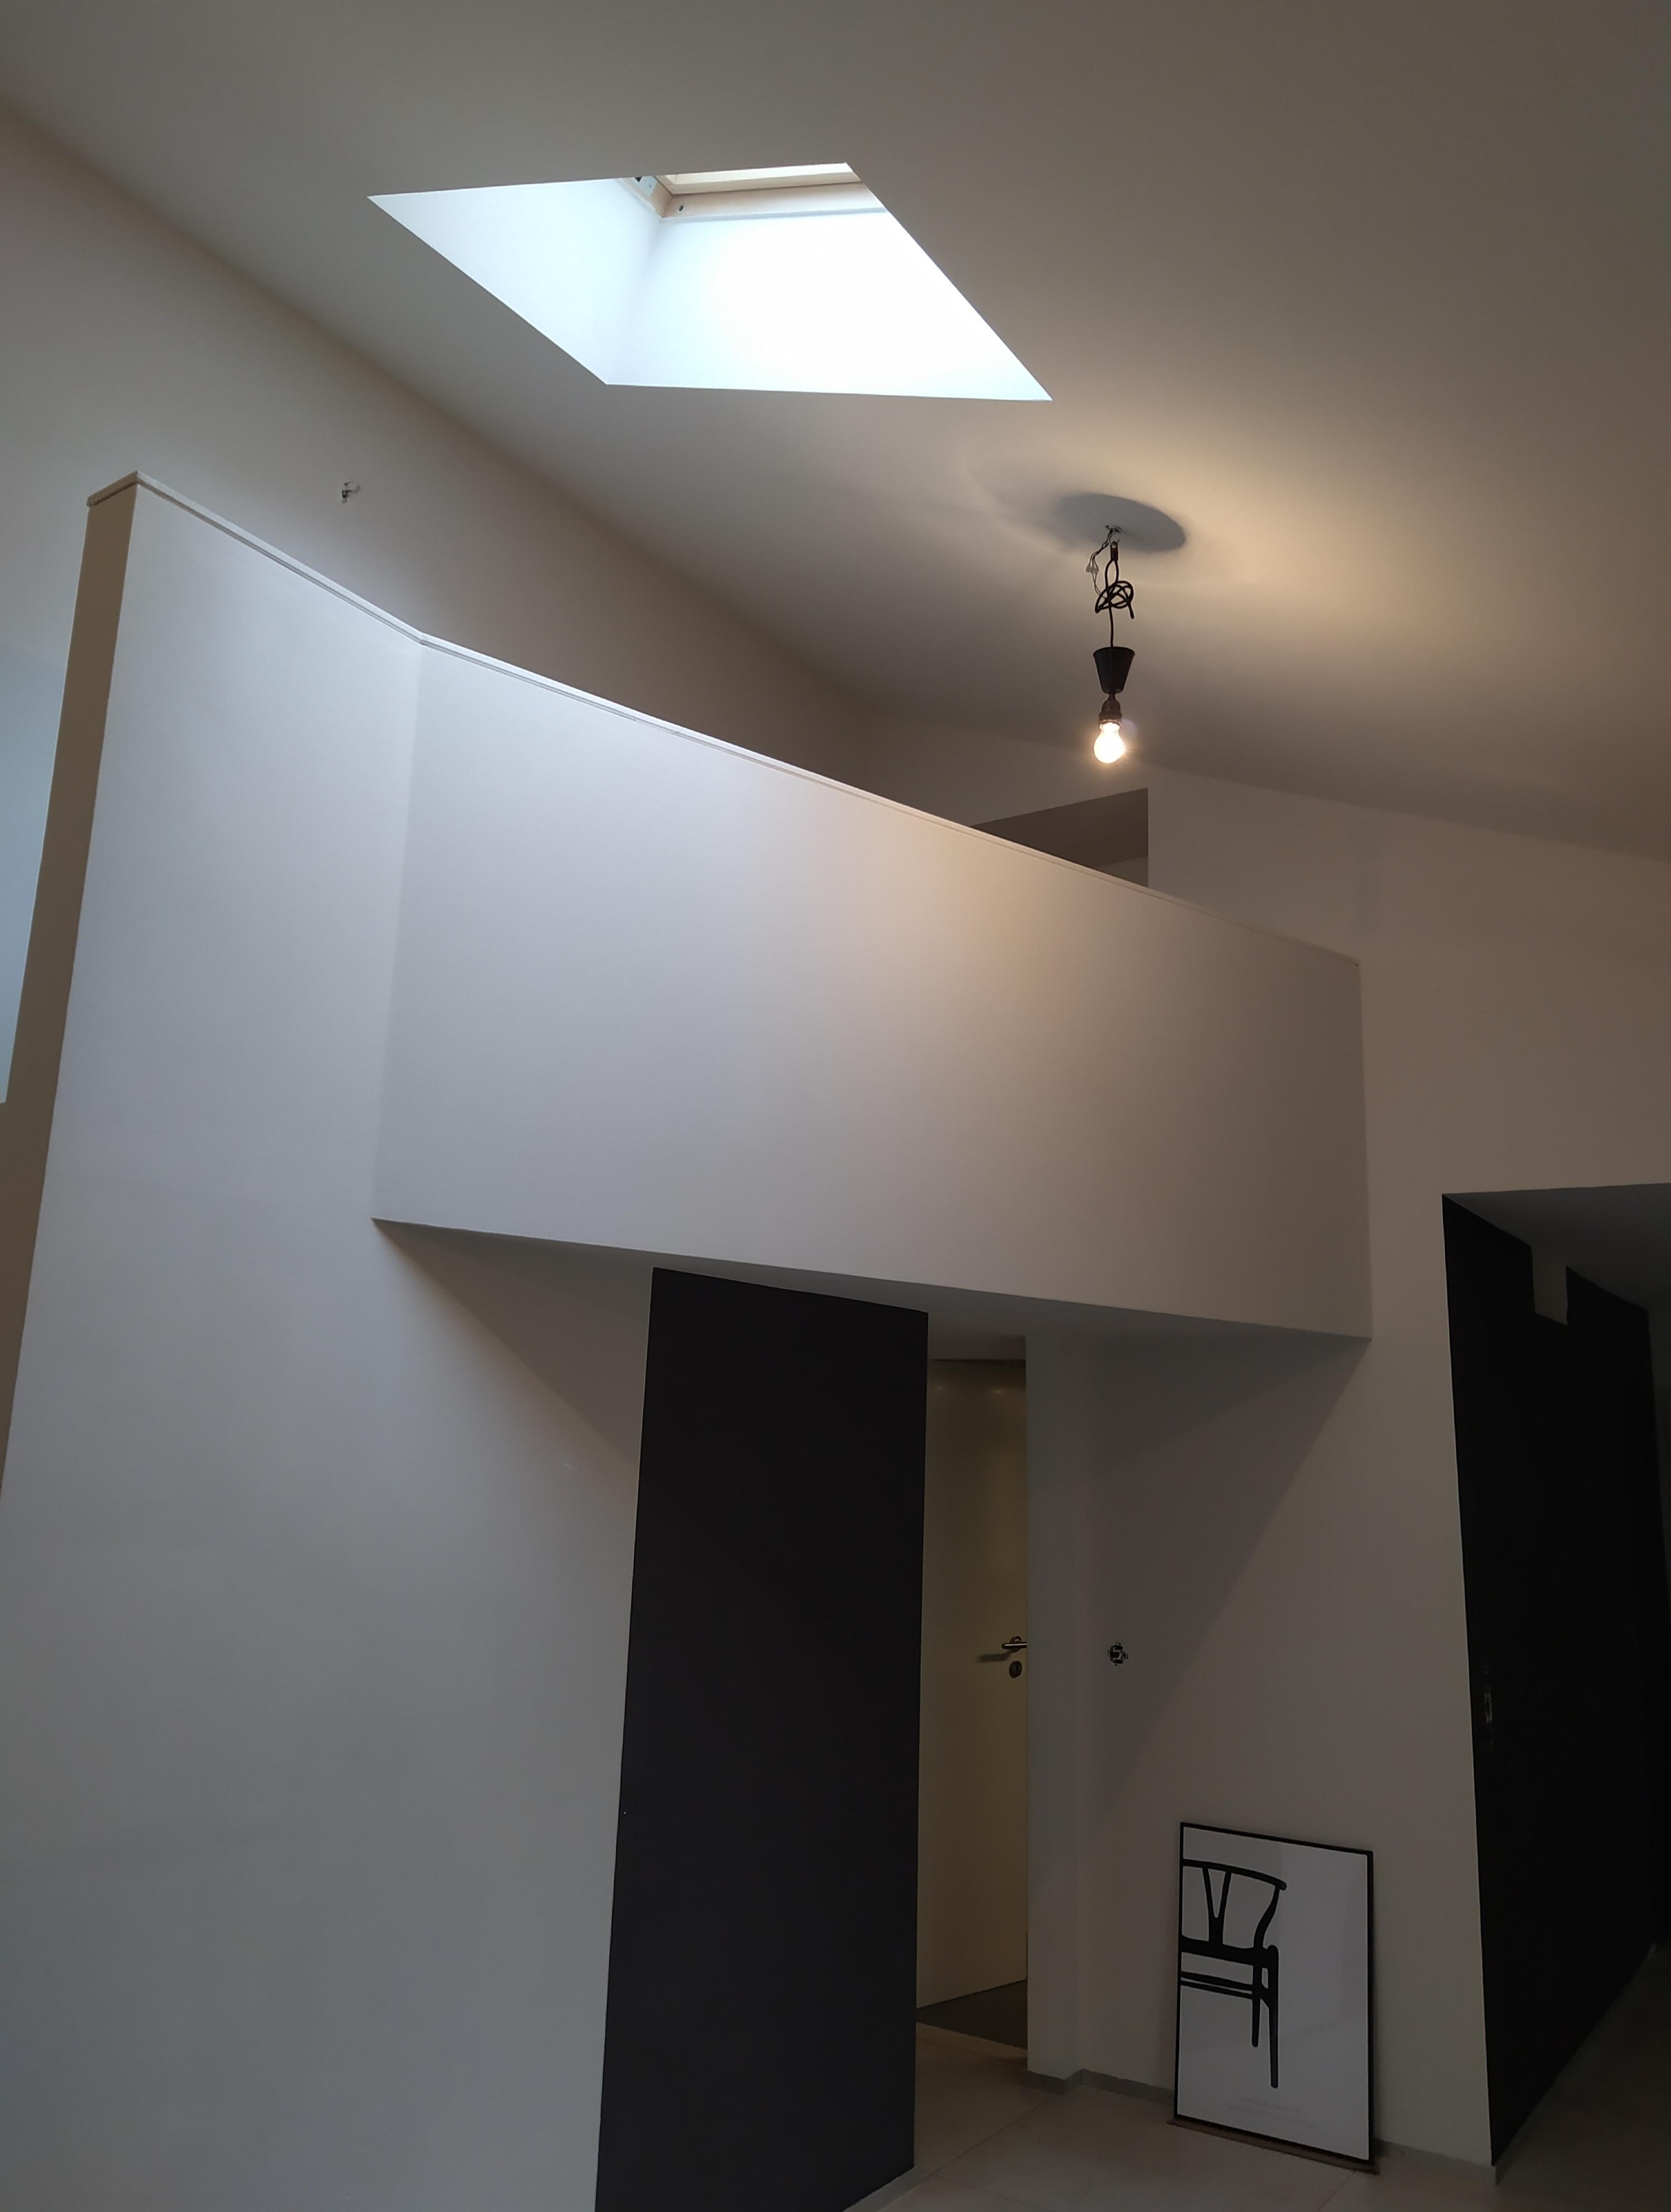 Galerie im zukünftigen Wohnzimmer mit kleinem Kücheneinblick.
#frischgestrichen #häuschen #neuesbild #schwarzweiẞ